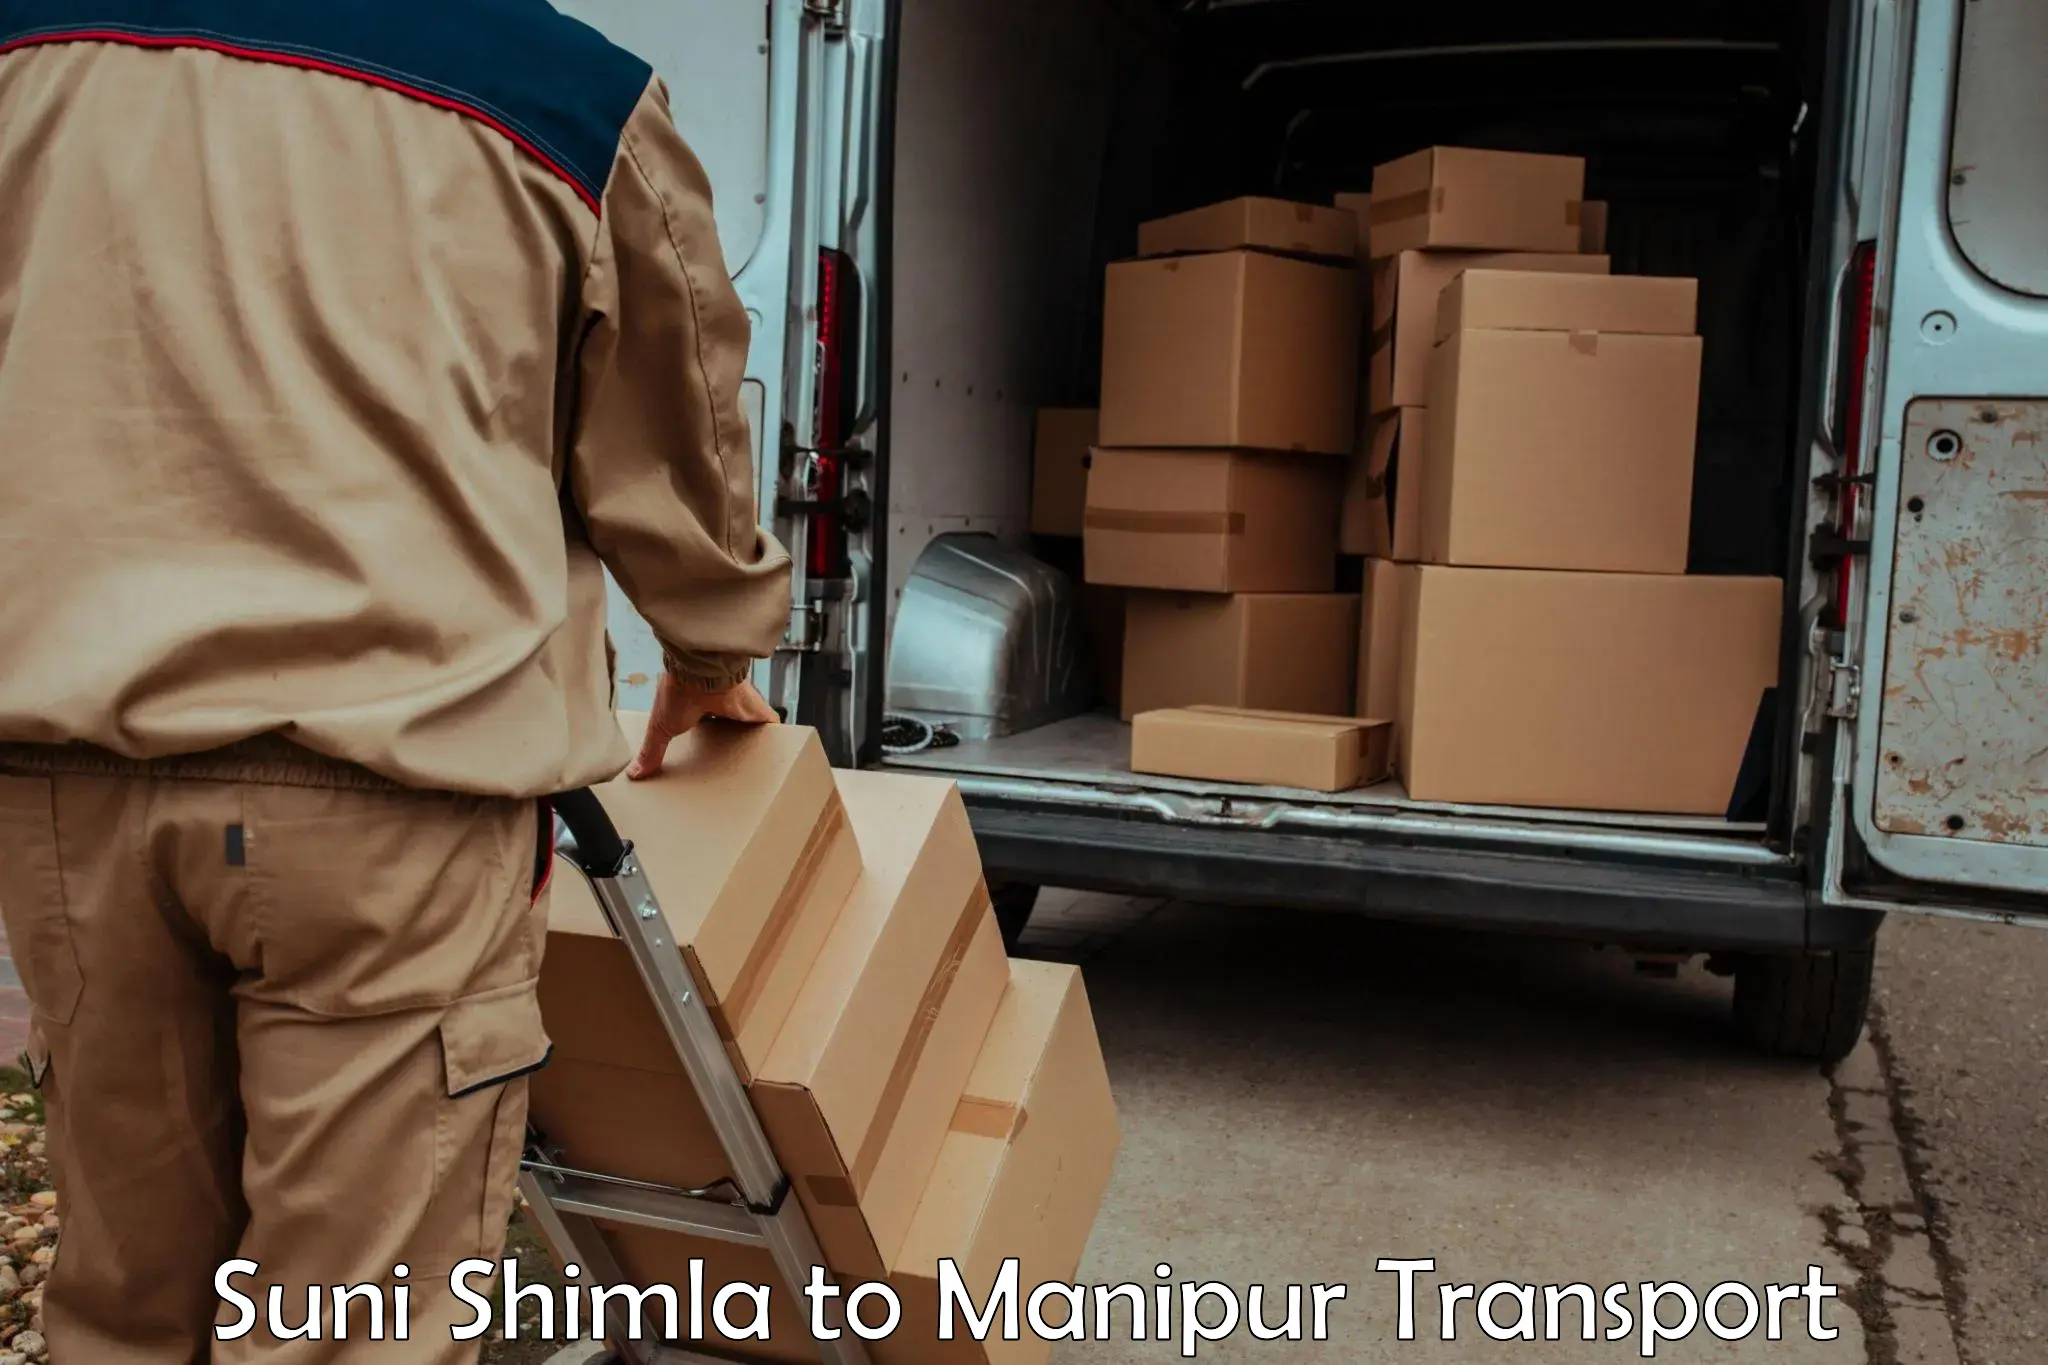 Bike shipping service Suni Shimla to Jiribam